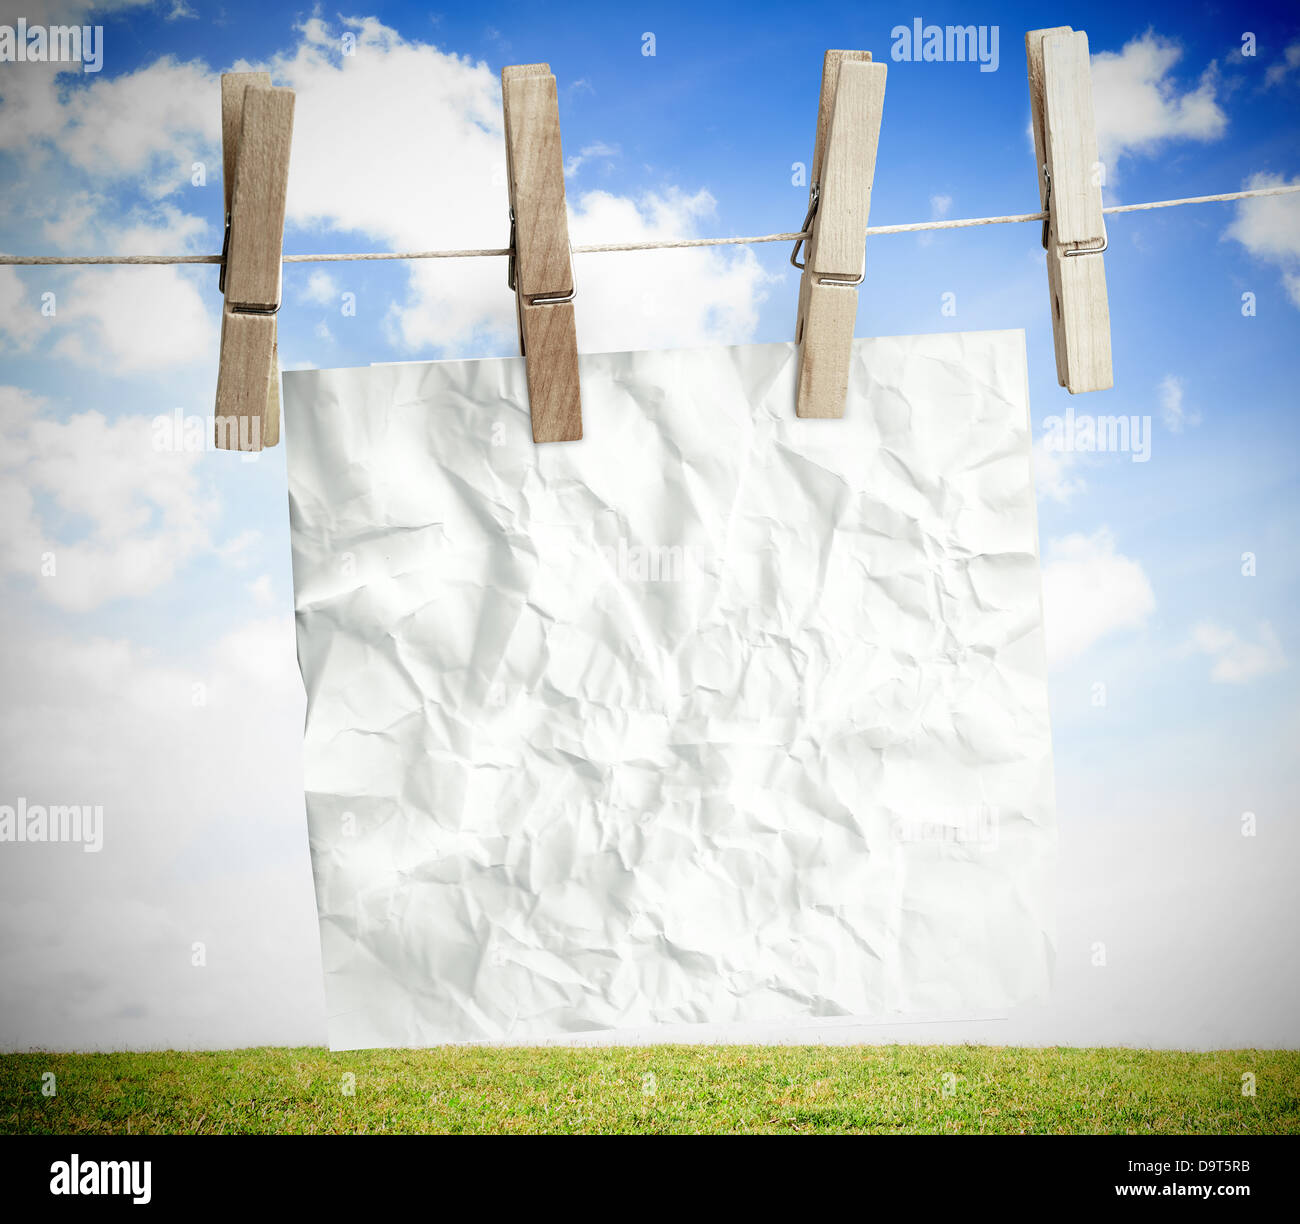 Weiße zerknittertes Papier auf einer Wäscheleine aufgehängt Stockfoto